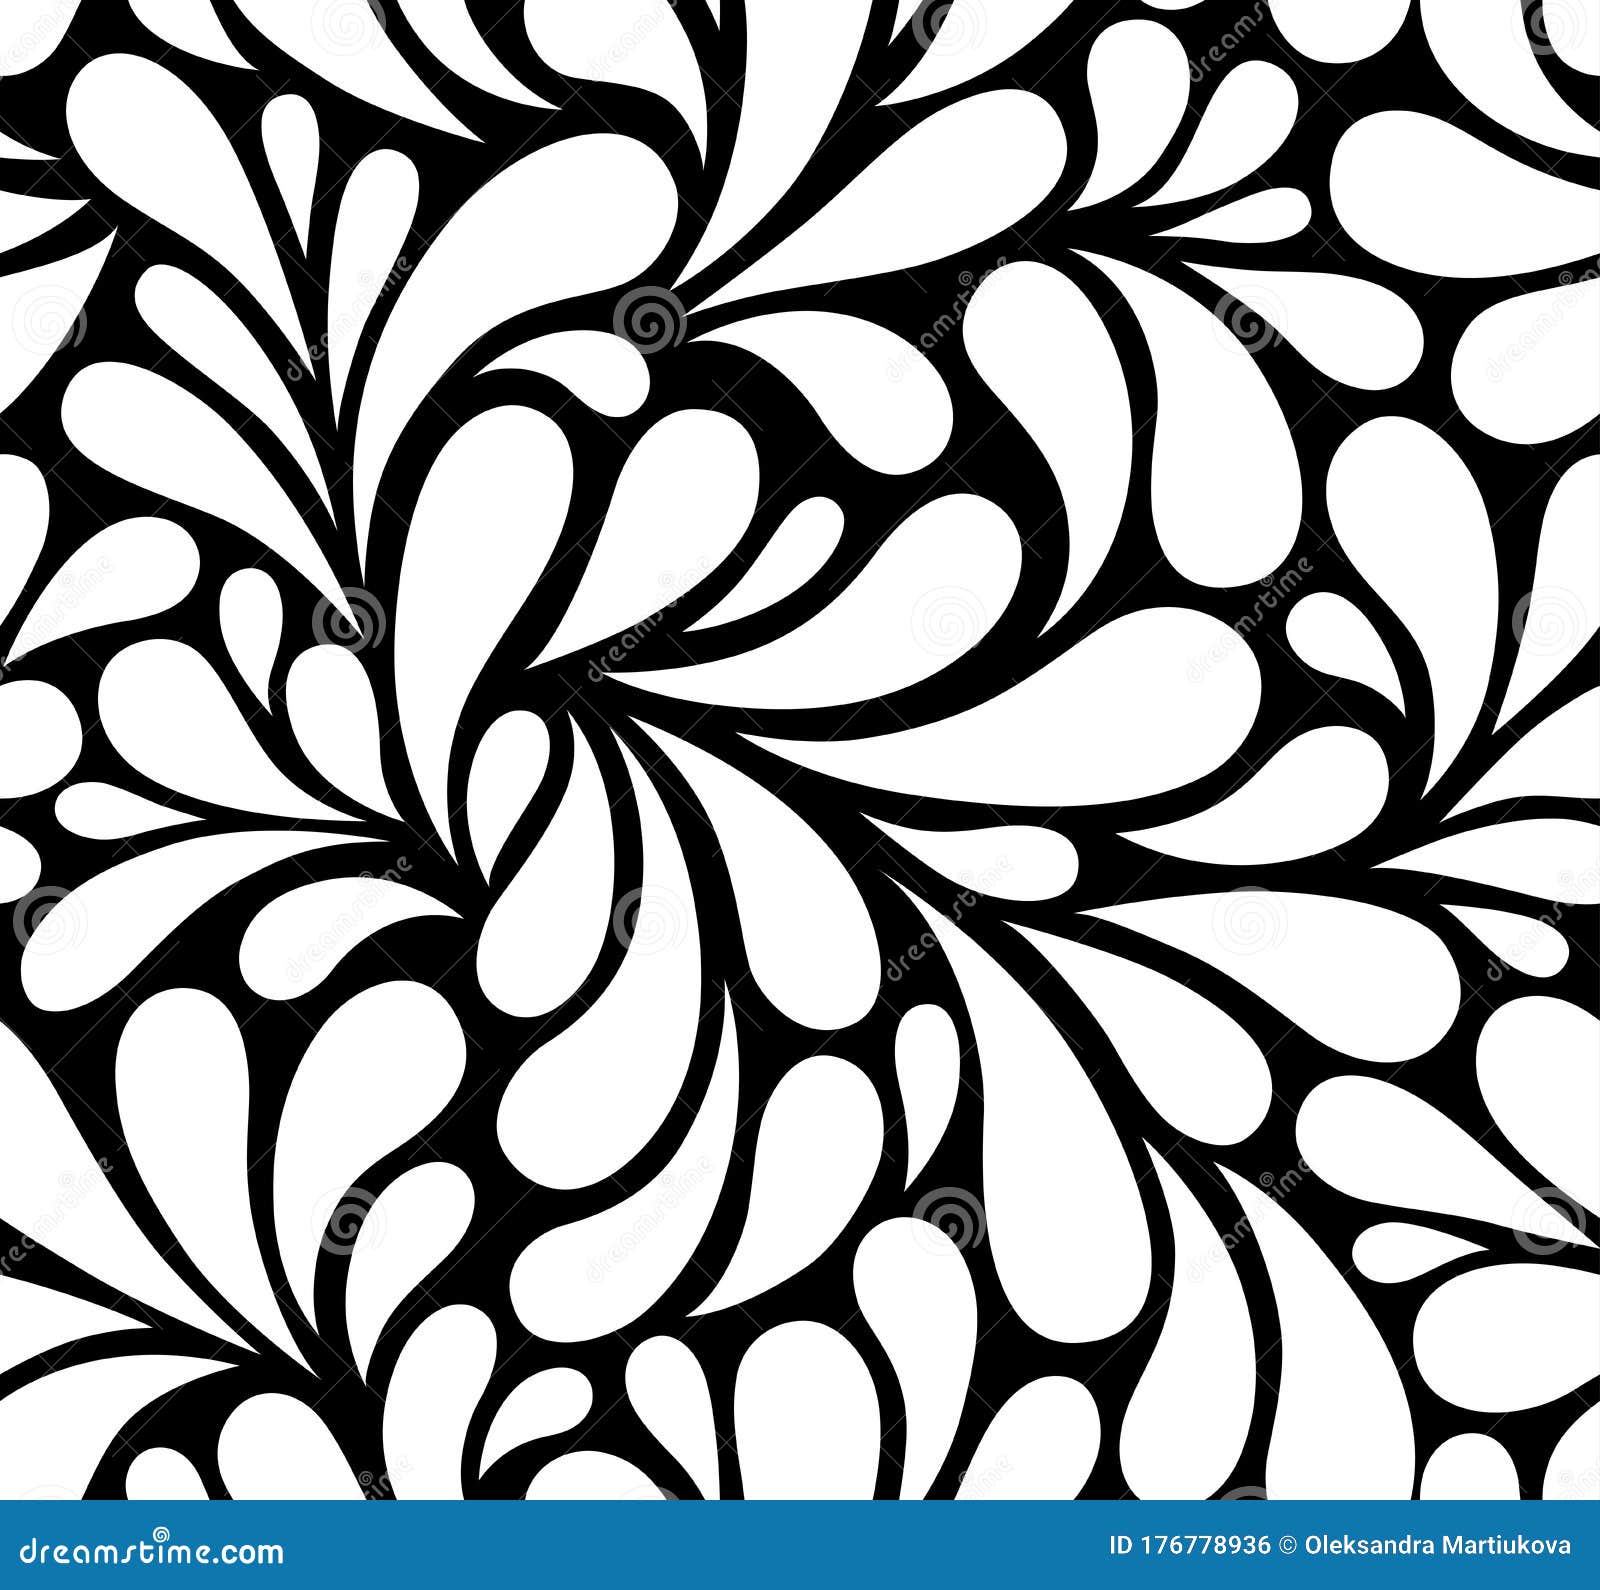 Điểm nhấn độc đáo sẽ xuất hiện trên mọi thiết kế của bạn với họa tiết hoa đơn sắc đen trắng. Với sự kết hợp giữa hoa và màu đen trắng tinh tế, họa tiết này sẽ tạo nên một phong cách đặc biệt cho thiết kế của bạn. Nhấn vào hình ảnh để xem thêm về họa tiết hoa đơn sắc đen trắng vector.